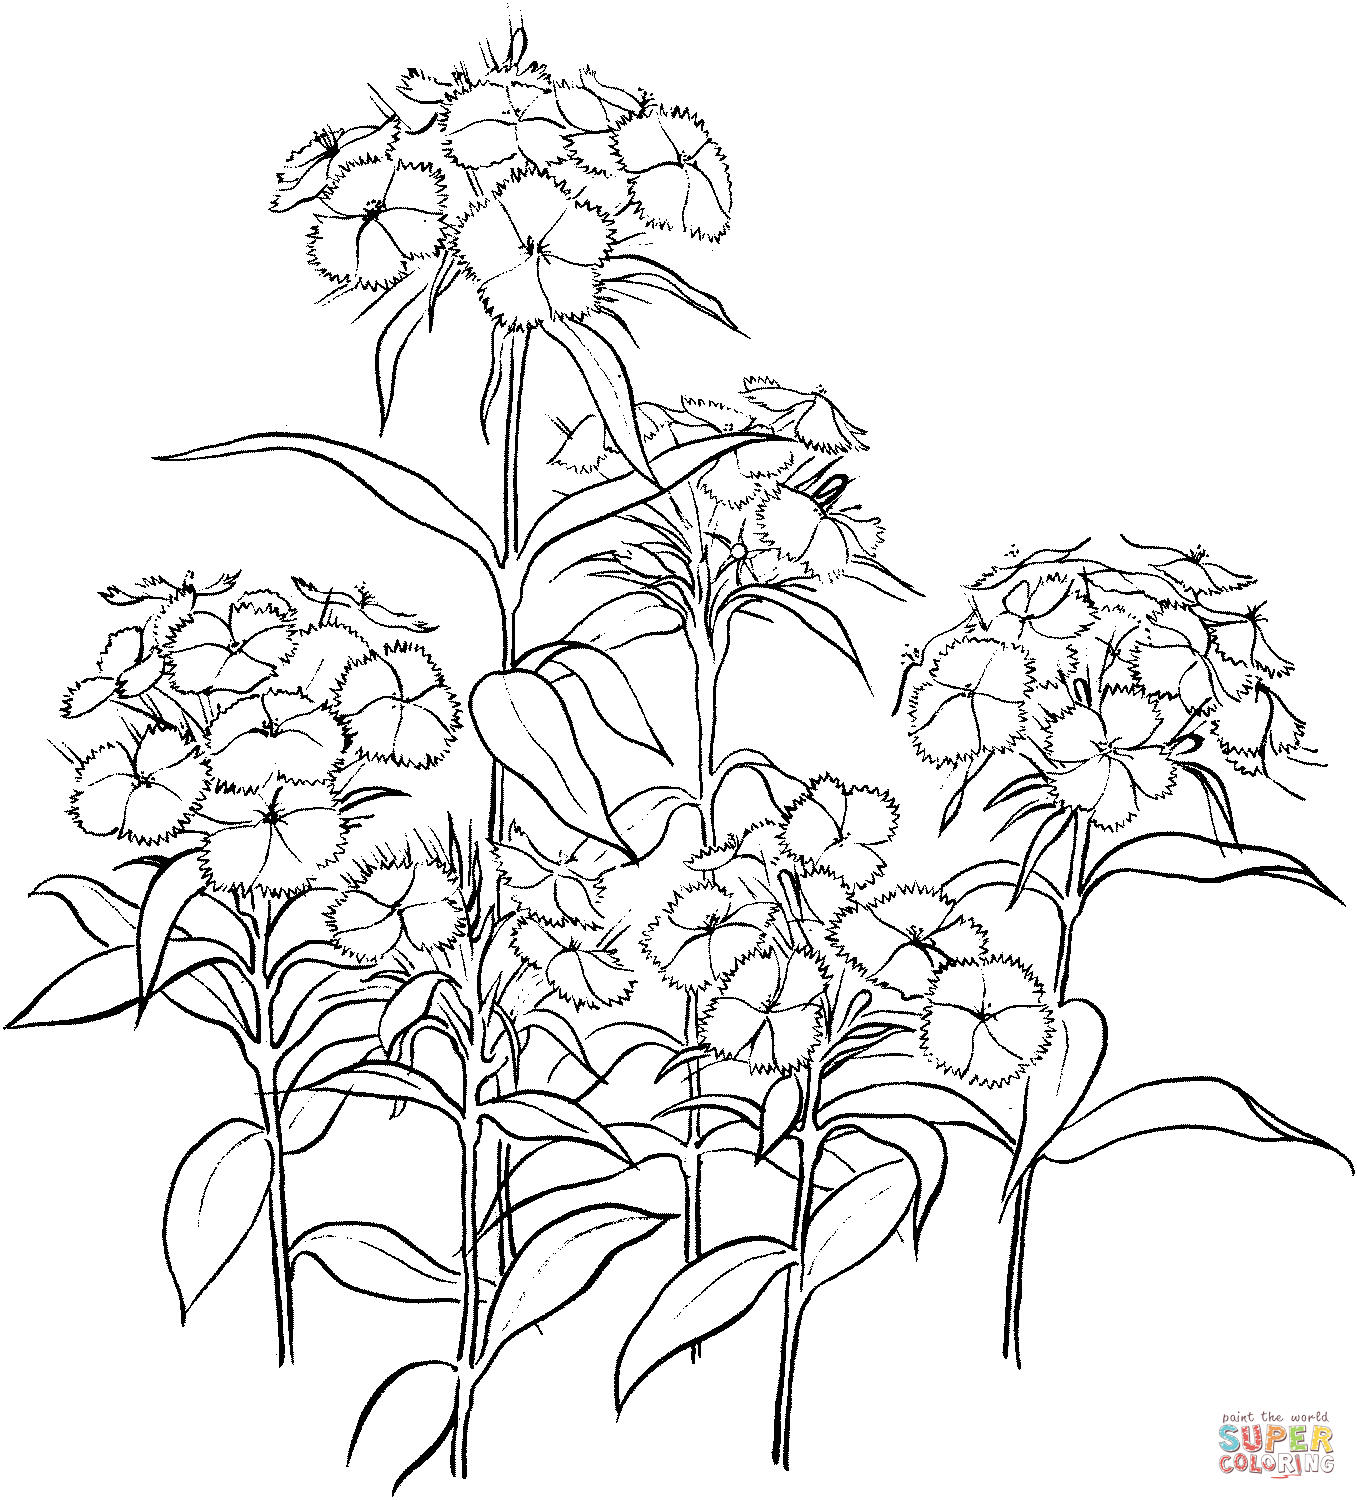 Dianthus 2 dal garofano